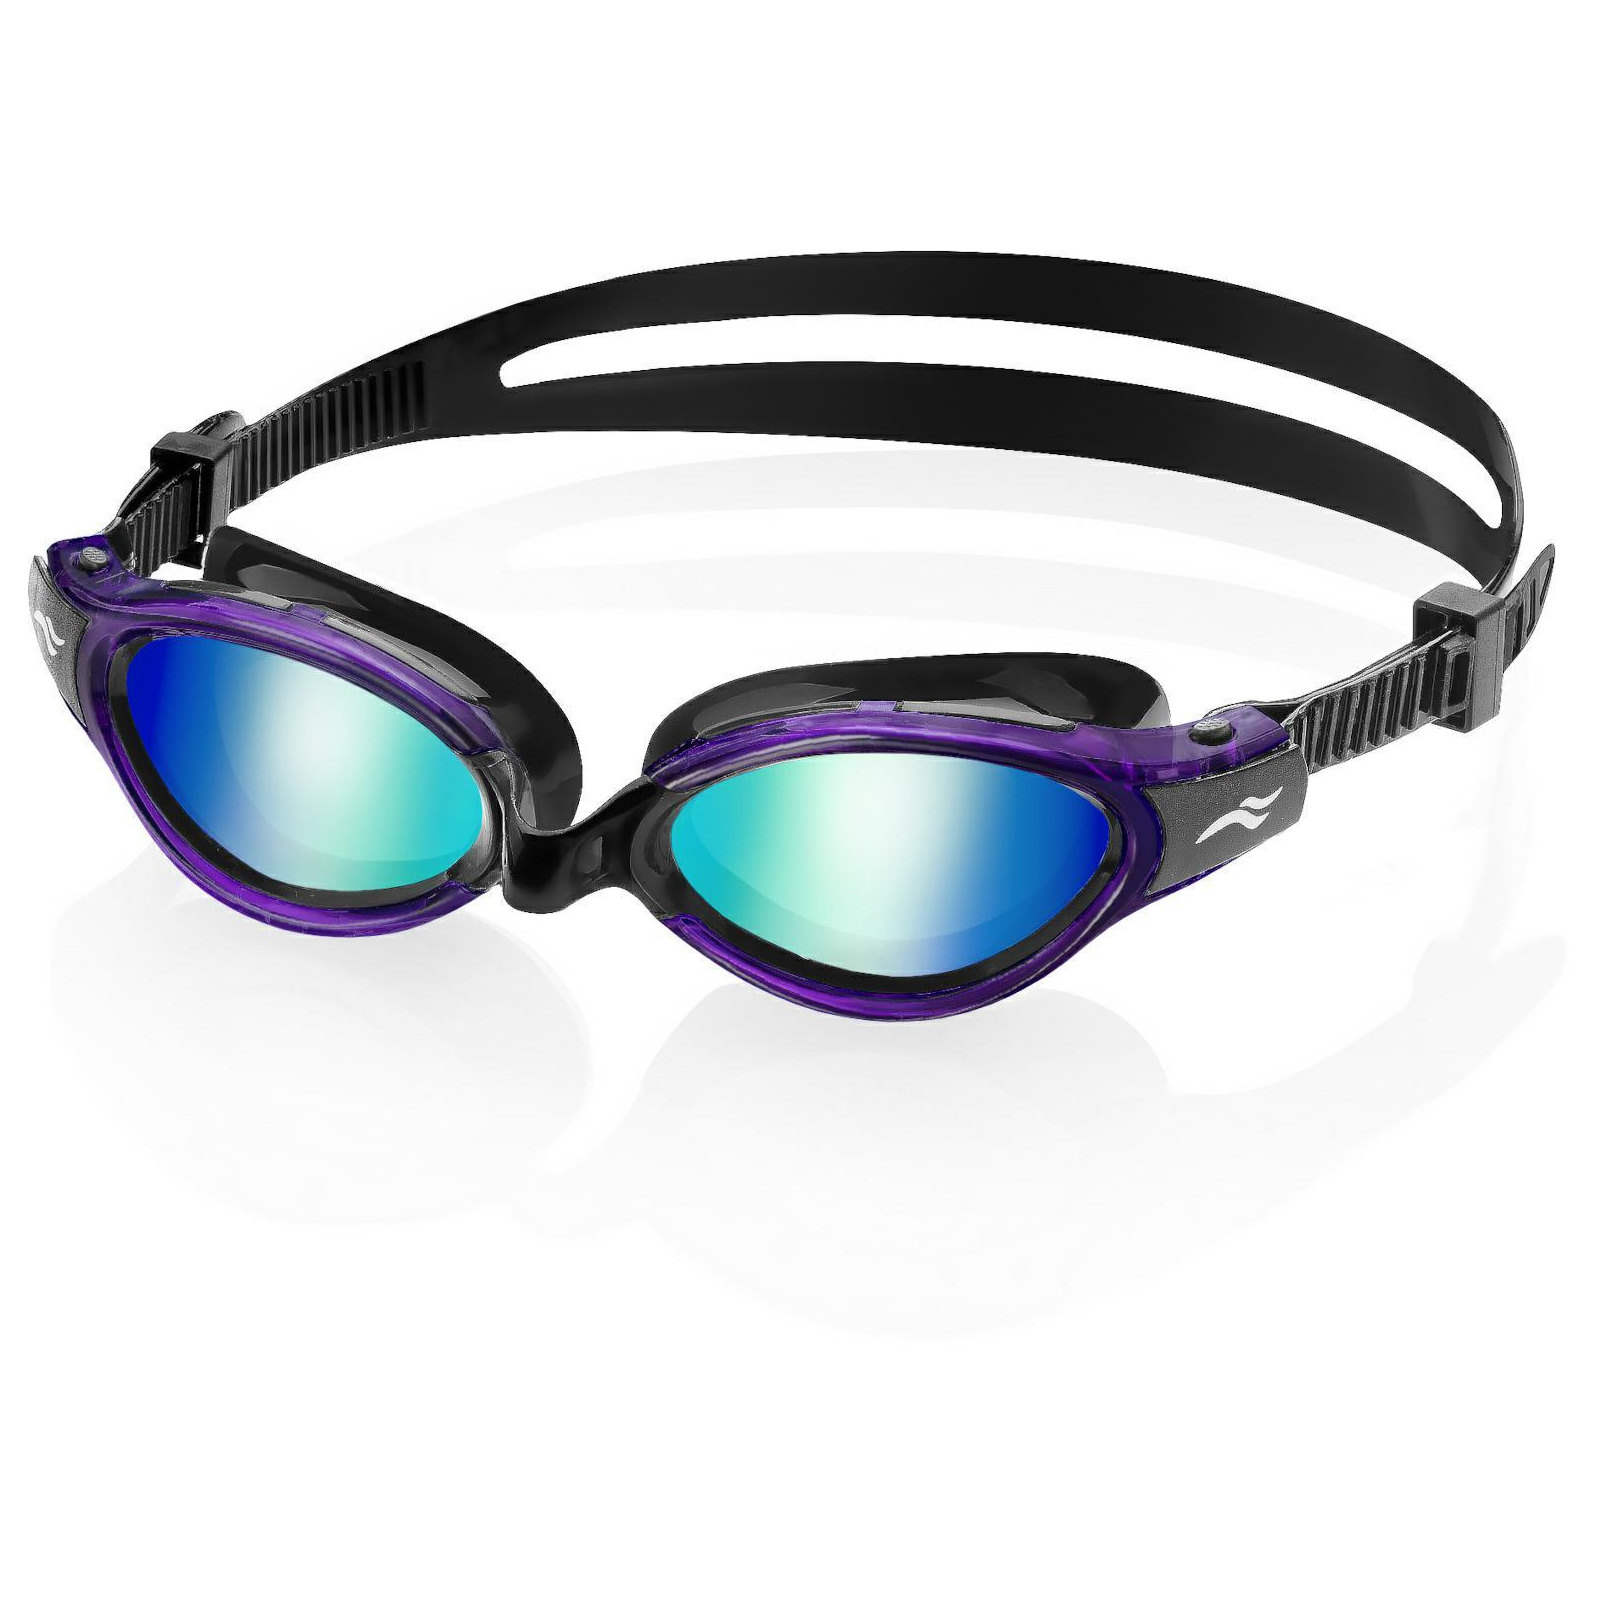 Очки для плавания Aqua Speed Triton 2.0 Mirror 283-53 60418 чорний, сірий OSFM (5905718604180)